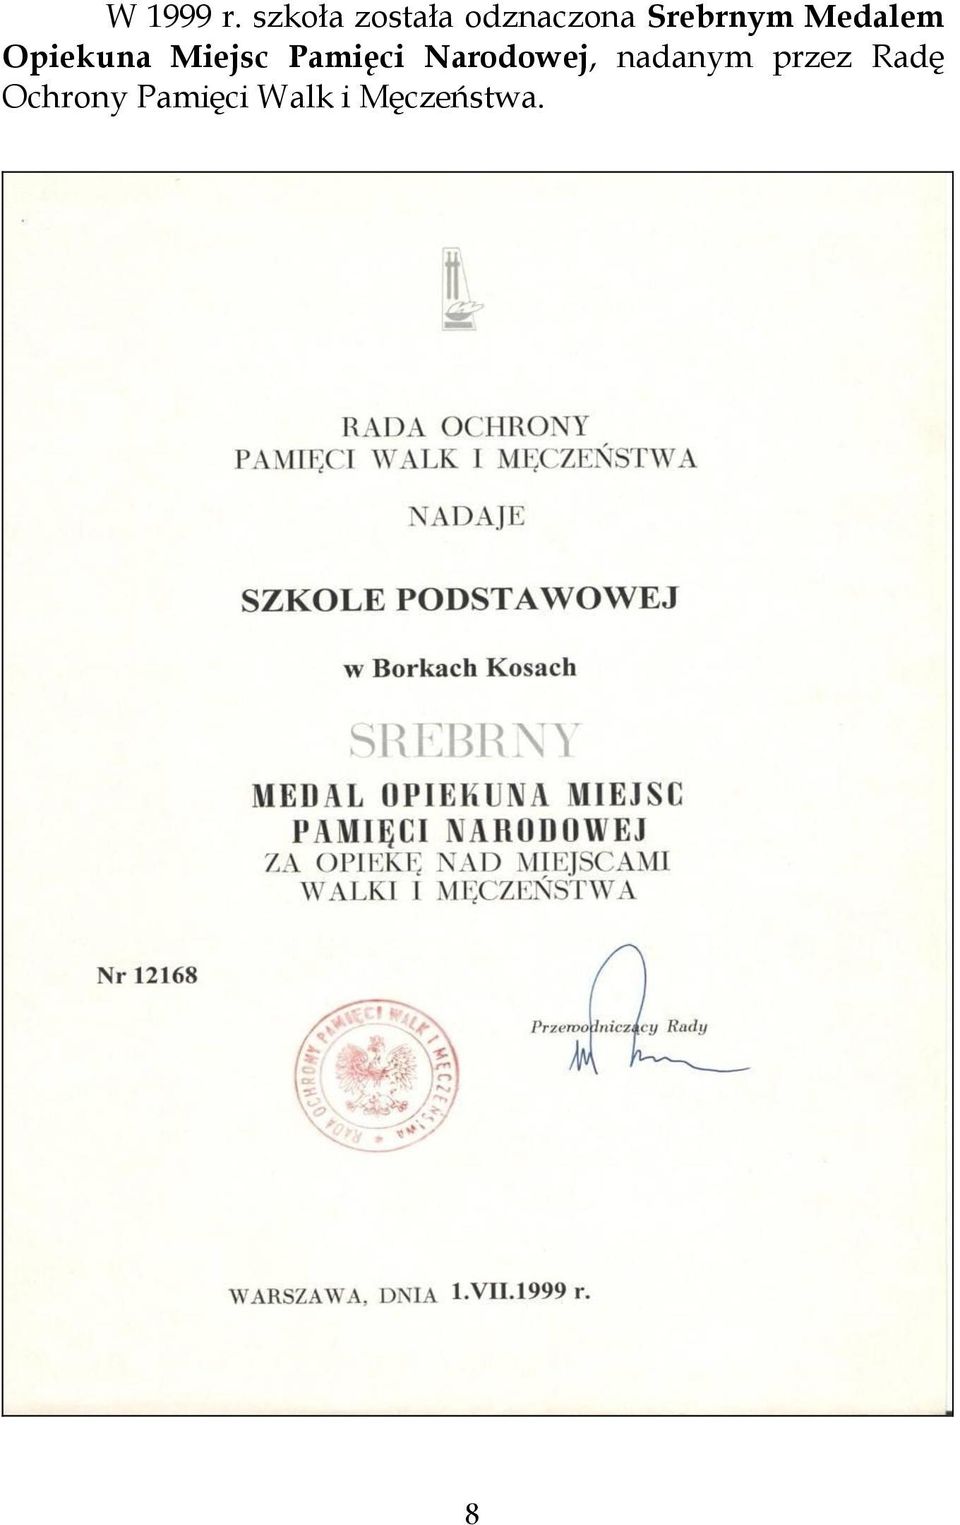 Medalem Opiekuna Miejsc Pamięci